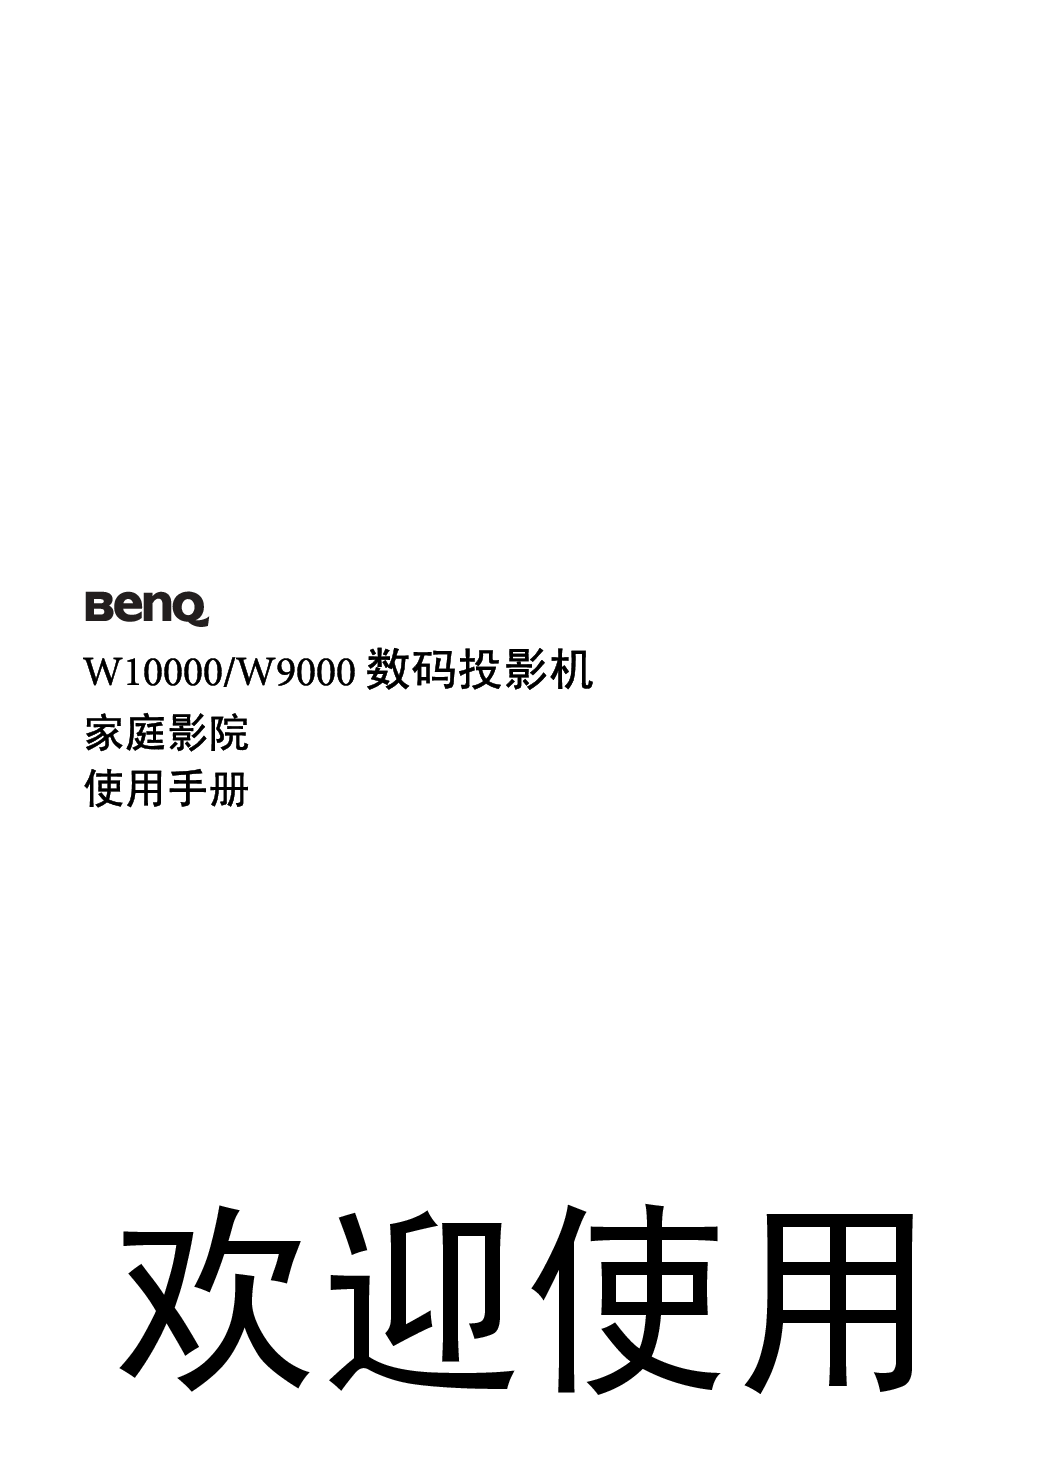 明基 Benq W10000 使用手册 封面